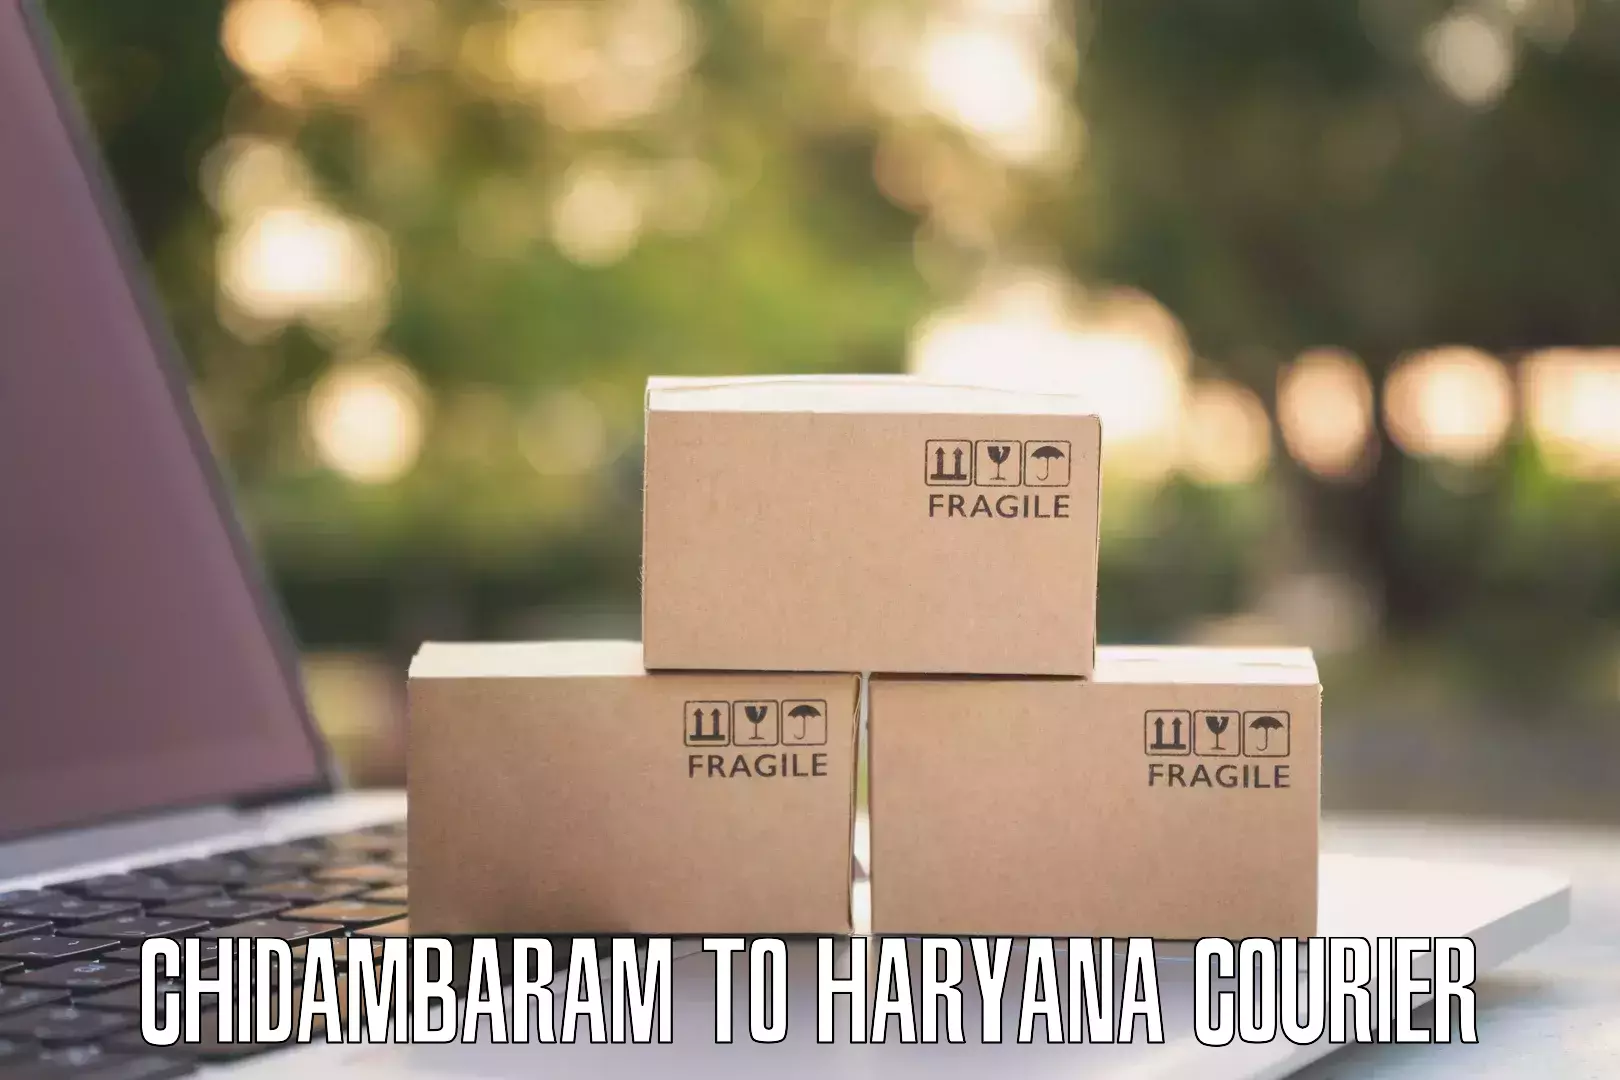 Easy return solutions Chidambaram to Haryana